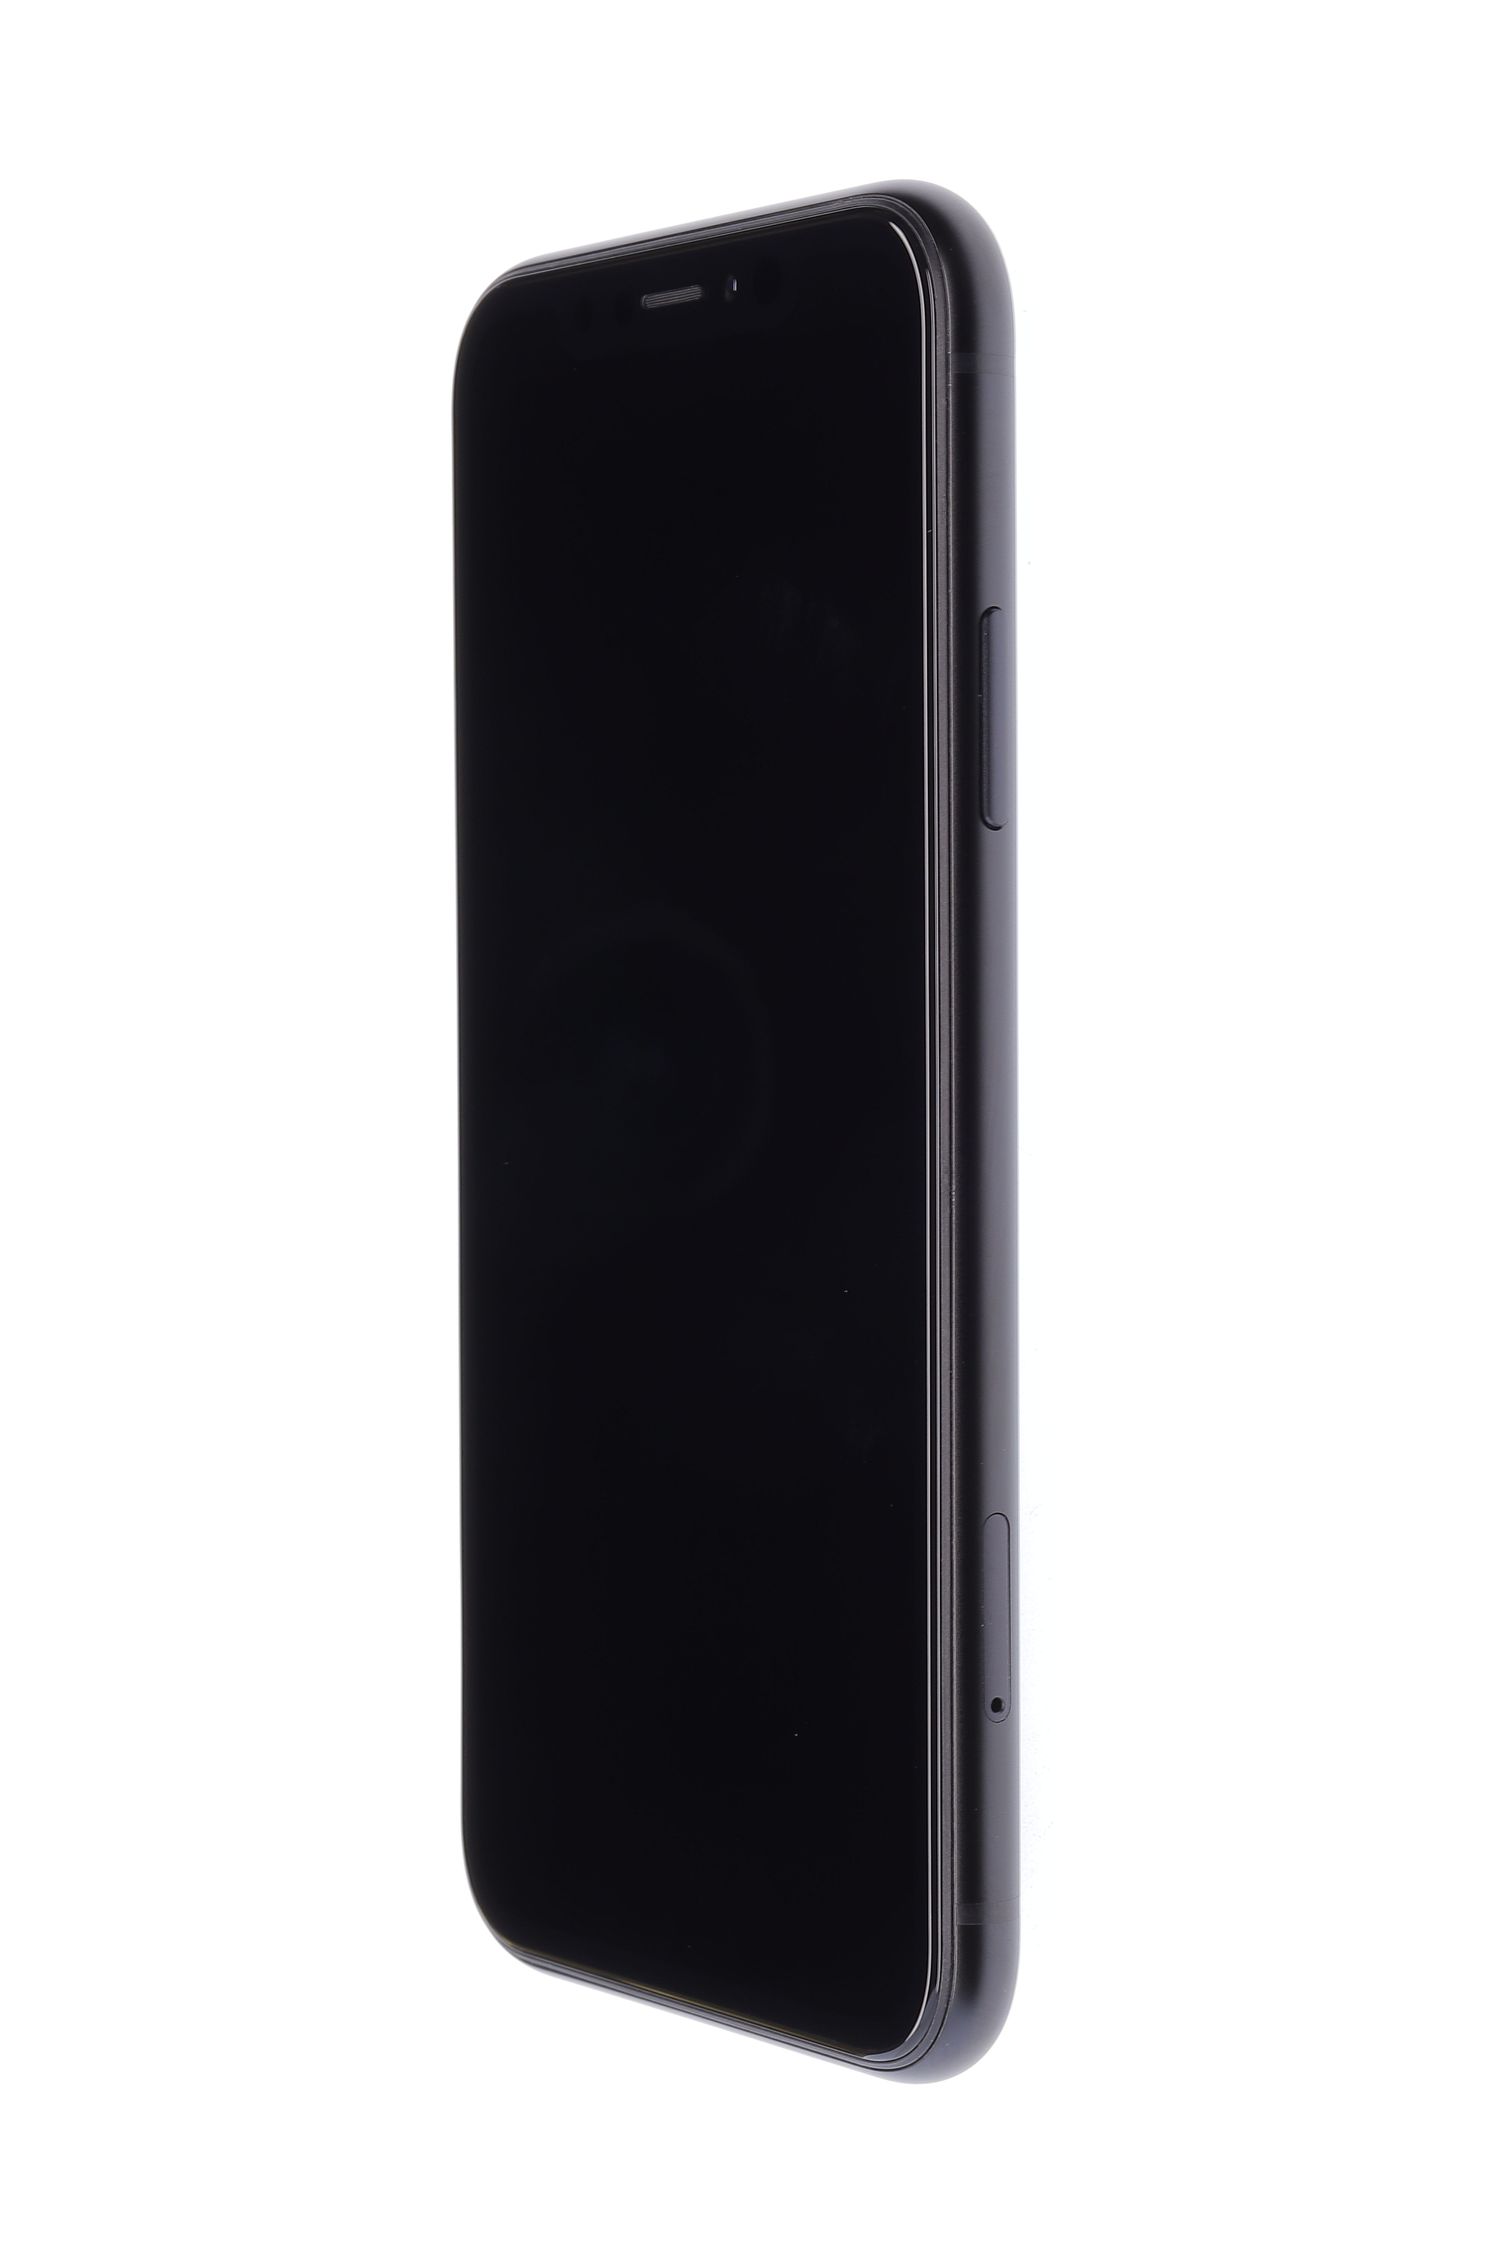 Telefon mobil Apple iPhone XR, Black, 256 GB, Foarte Bun